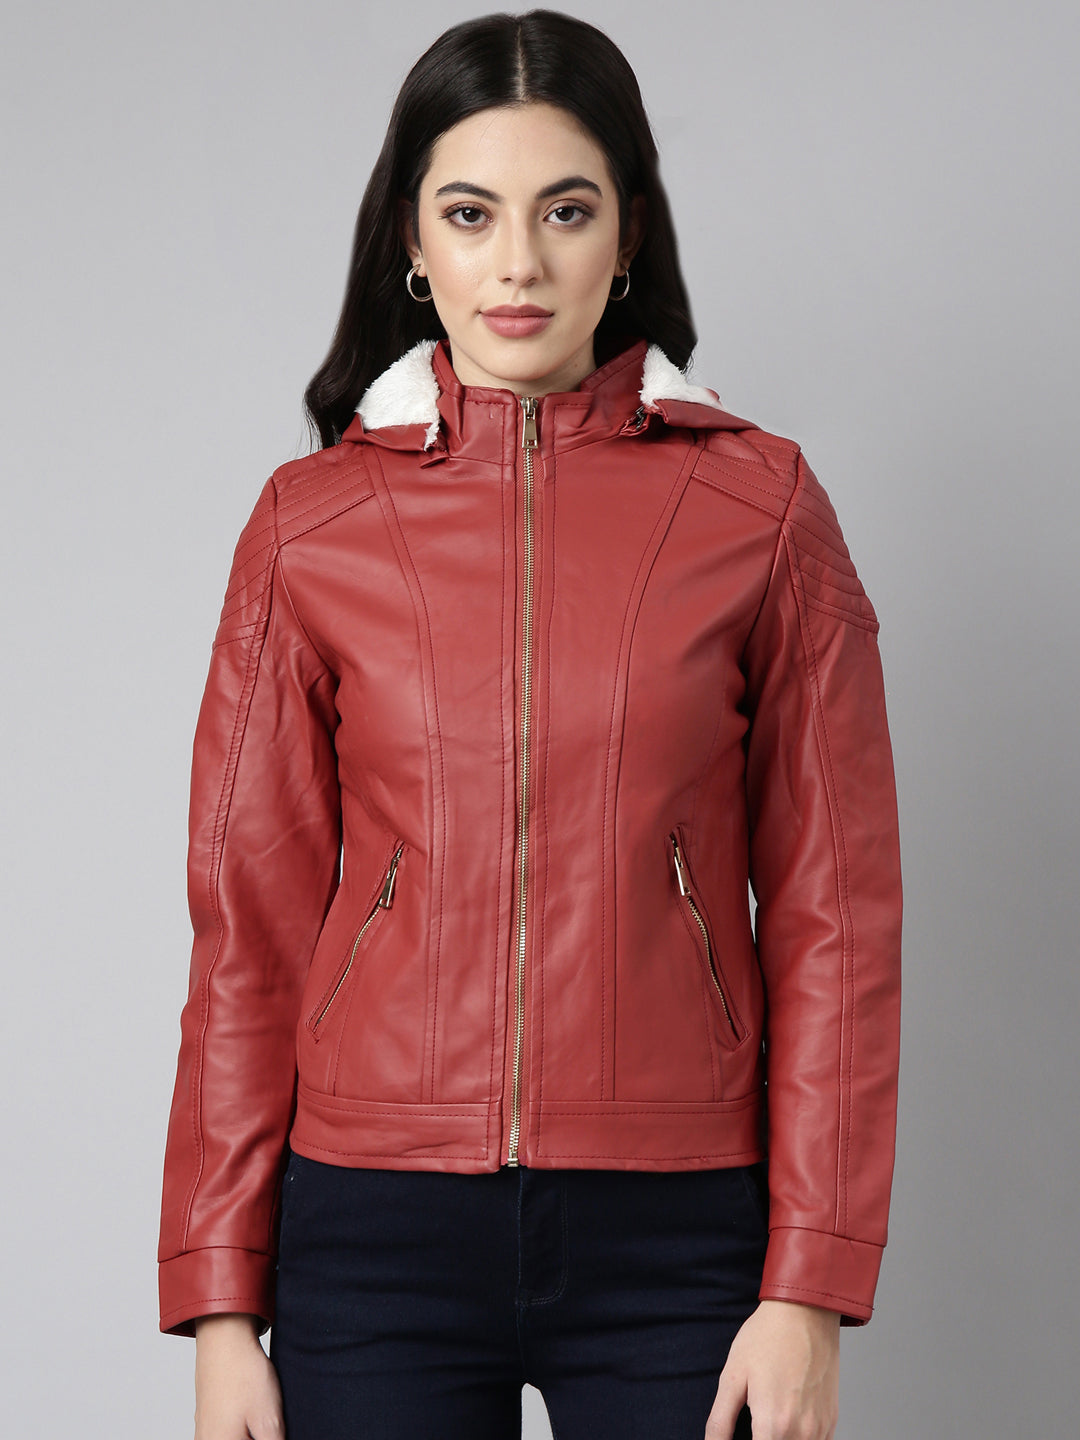 Women Solid Rust Biker Jacket Comes with Detachable Hood